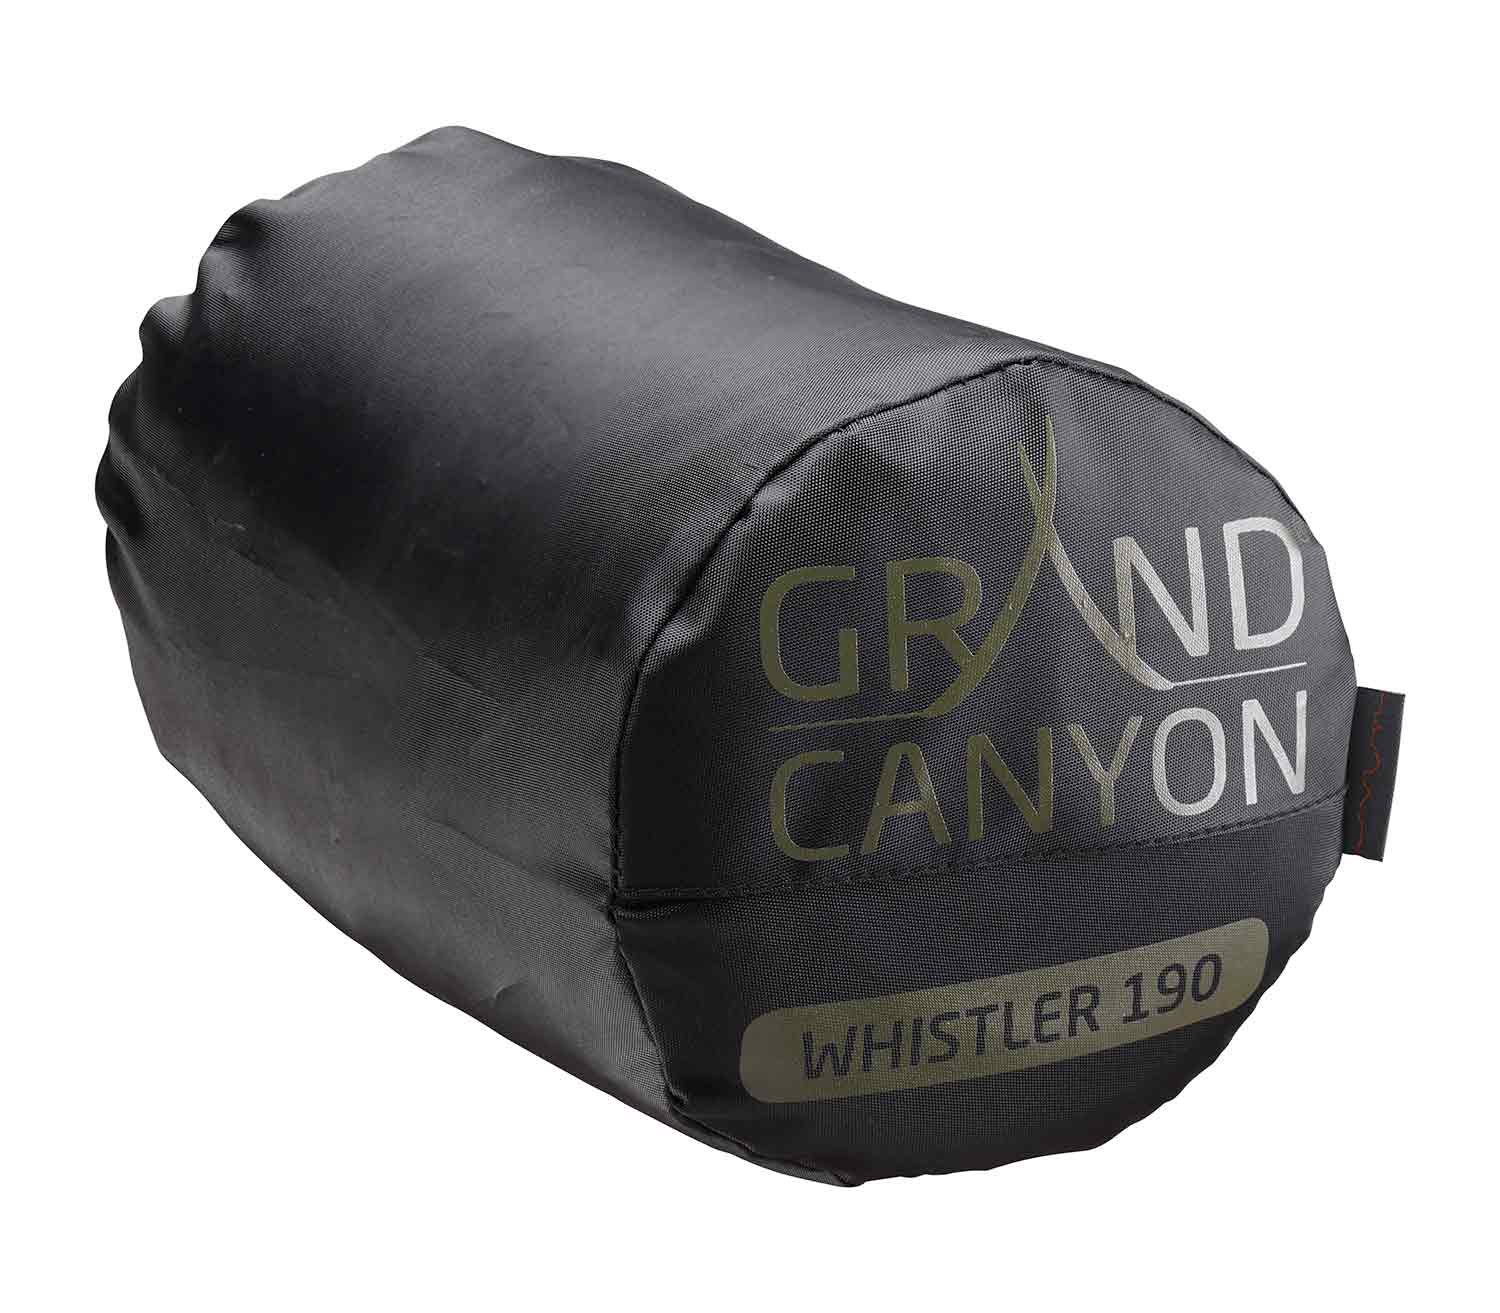 Saco de Dormir Grand Canyon Whistler 190 bolsa